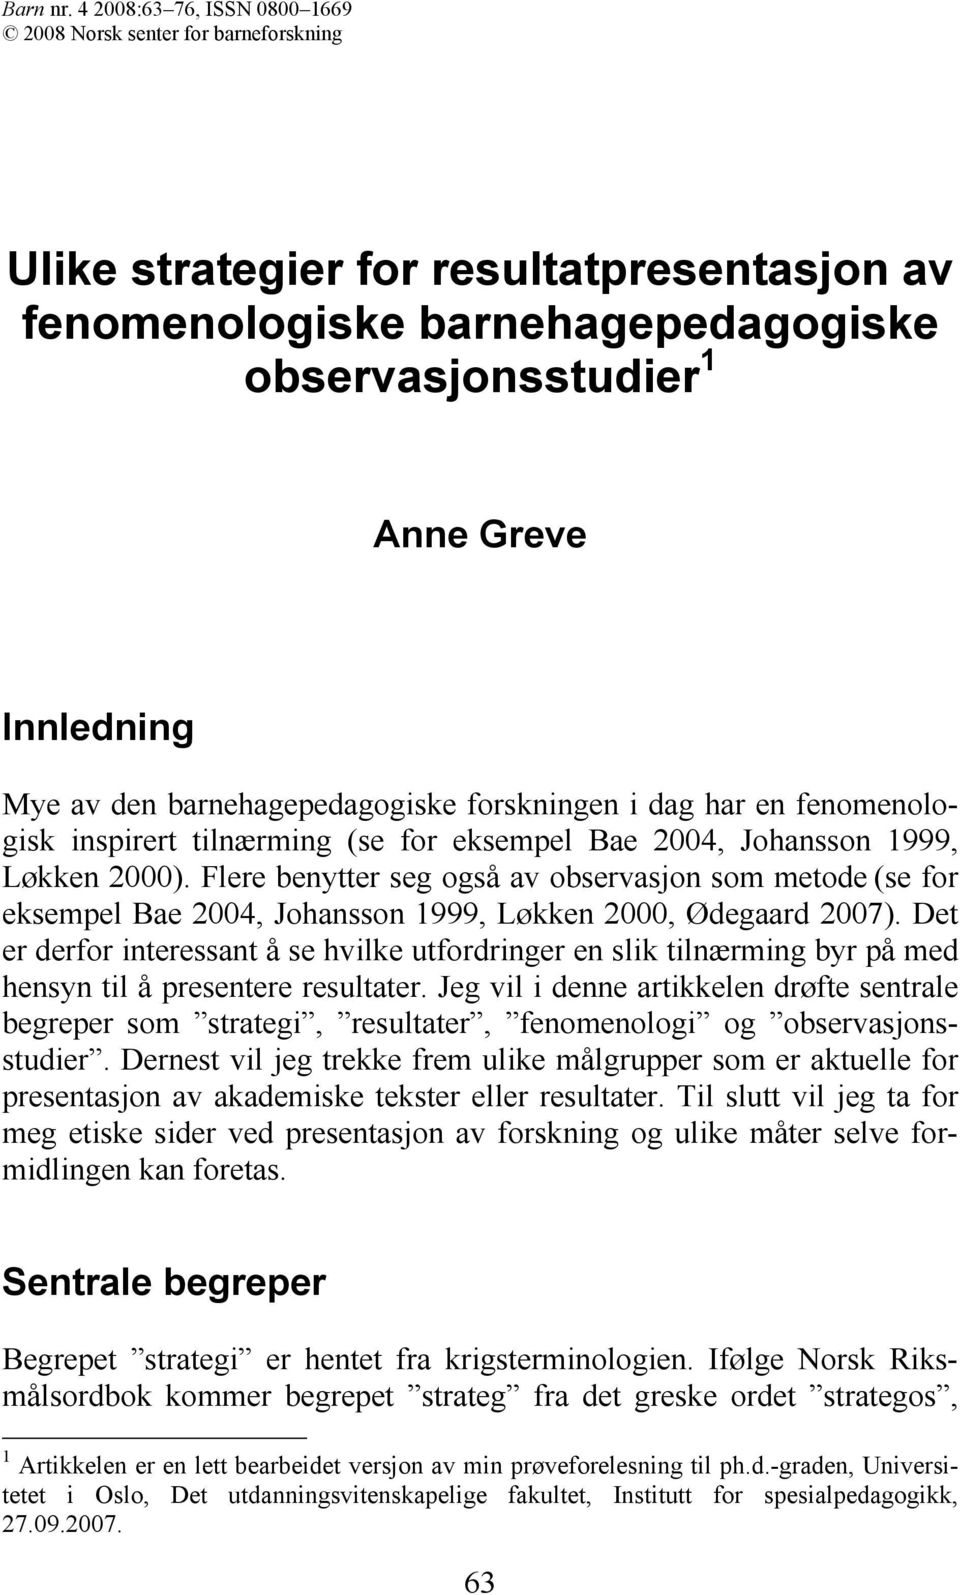 barnehagepedagogiske forskningen i dag har en fenomenologisk inspirert tilnærming (se for eksempel Bae 2004, Johansson 1999, Løkken 2000).